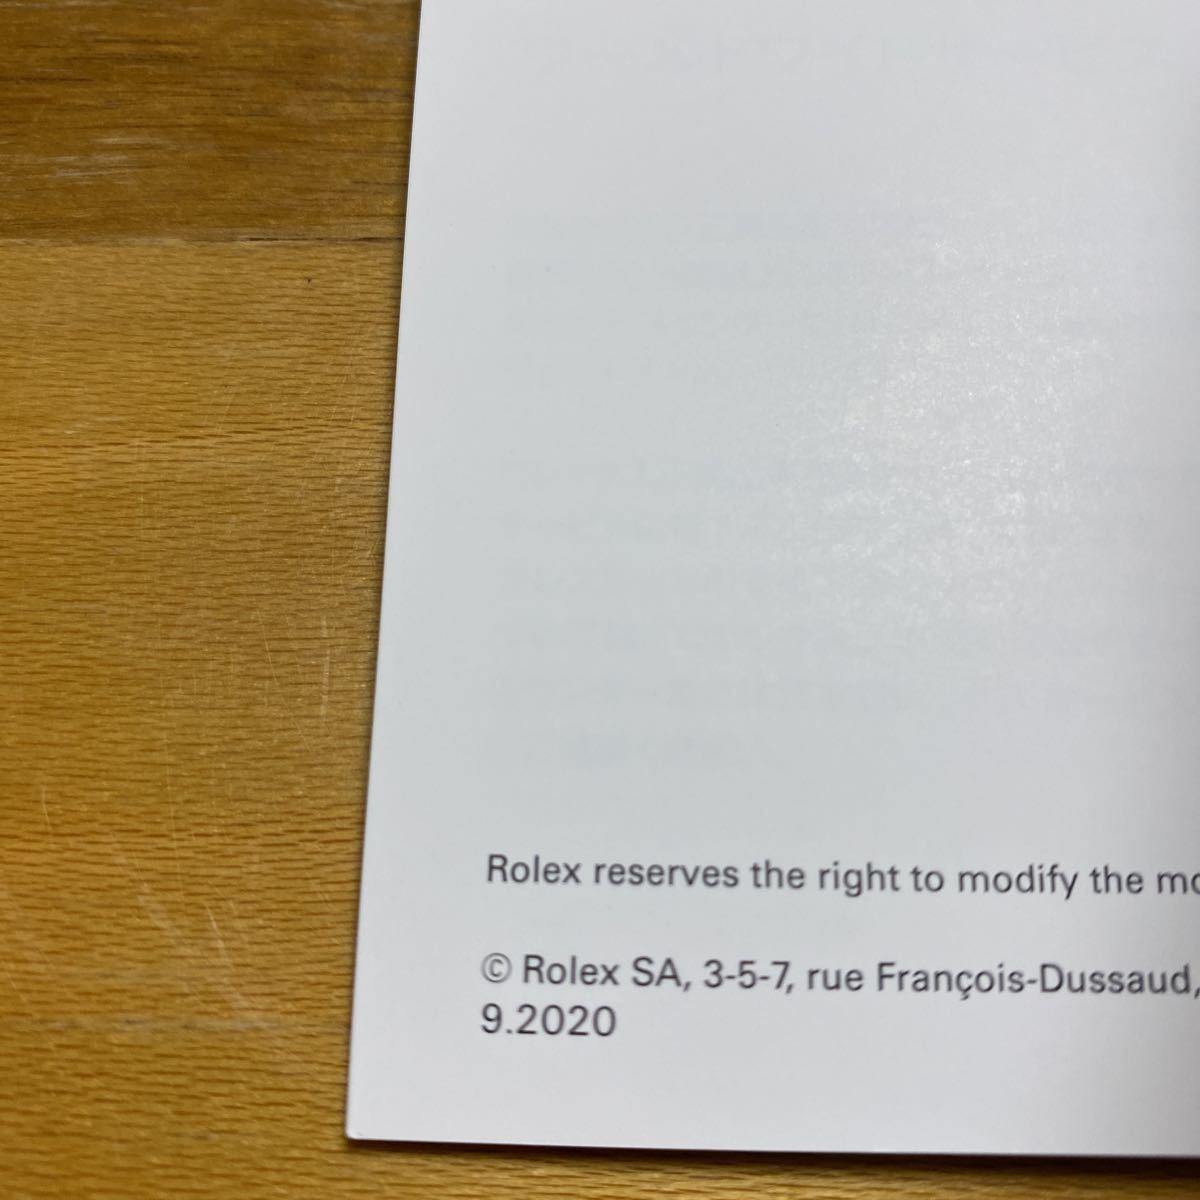 3454【希少必見】ロレックス サブマリーナ 冊子 取扱説明書 2020年度版 ROLEX SUBMARINER 冊子の画像2